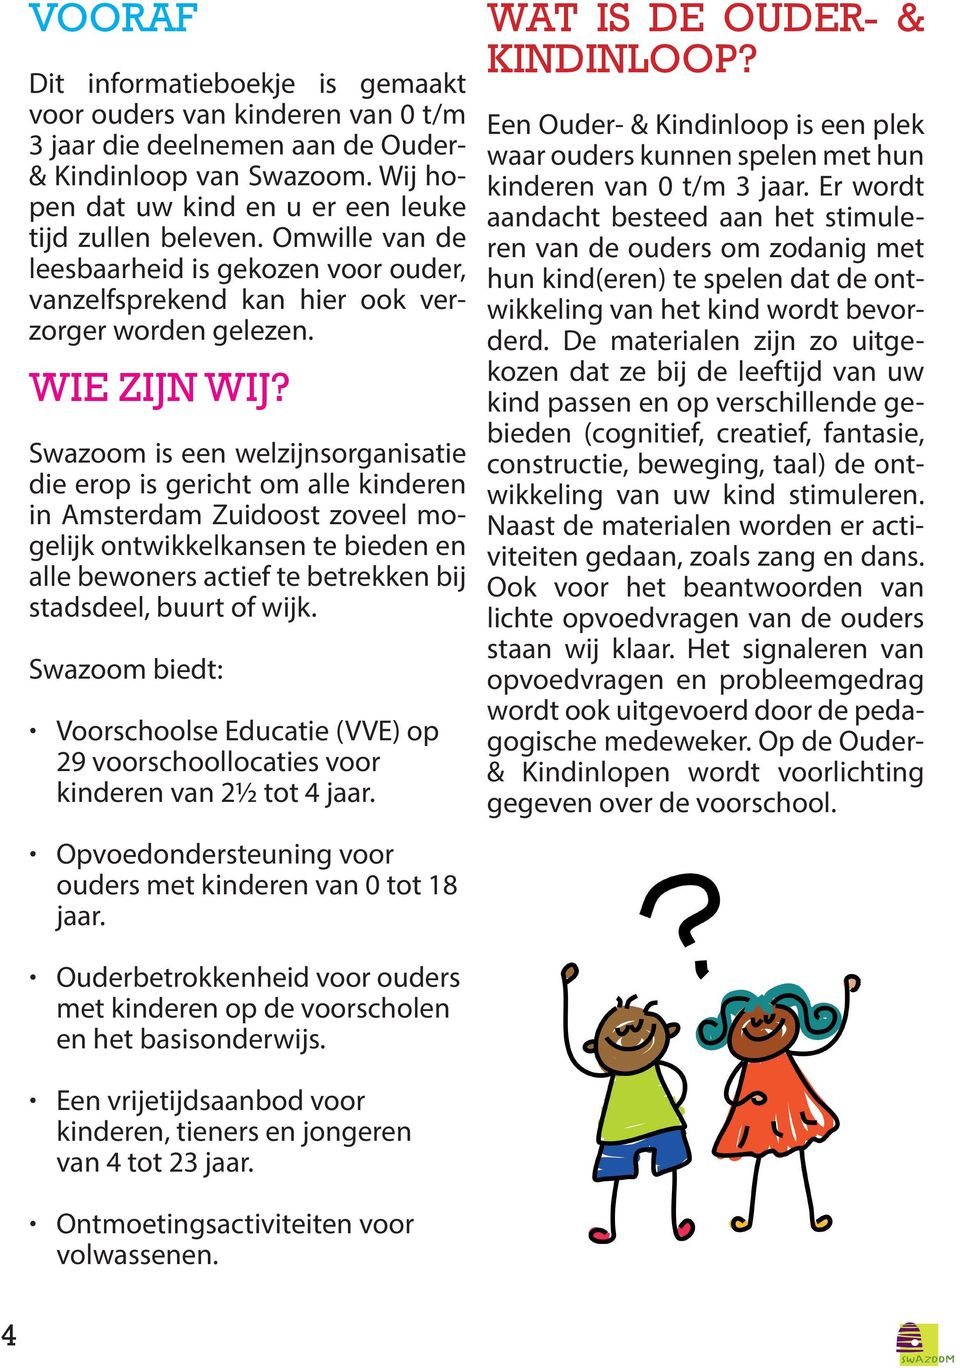 Swazoom is een welzijnsorganisatie die erop is gericht om alle kinderen in Amsterdam Zuidoost zoveel mogelijk ontwikkelkansen te bieden en alle bewoners actief te betrekken bij stadsdeel, buurt of